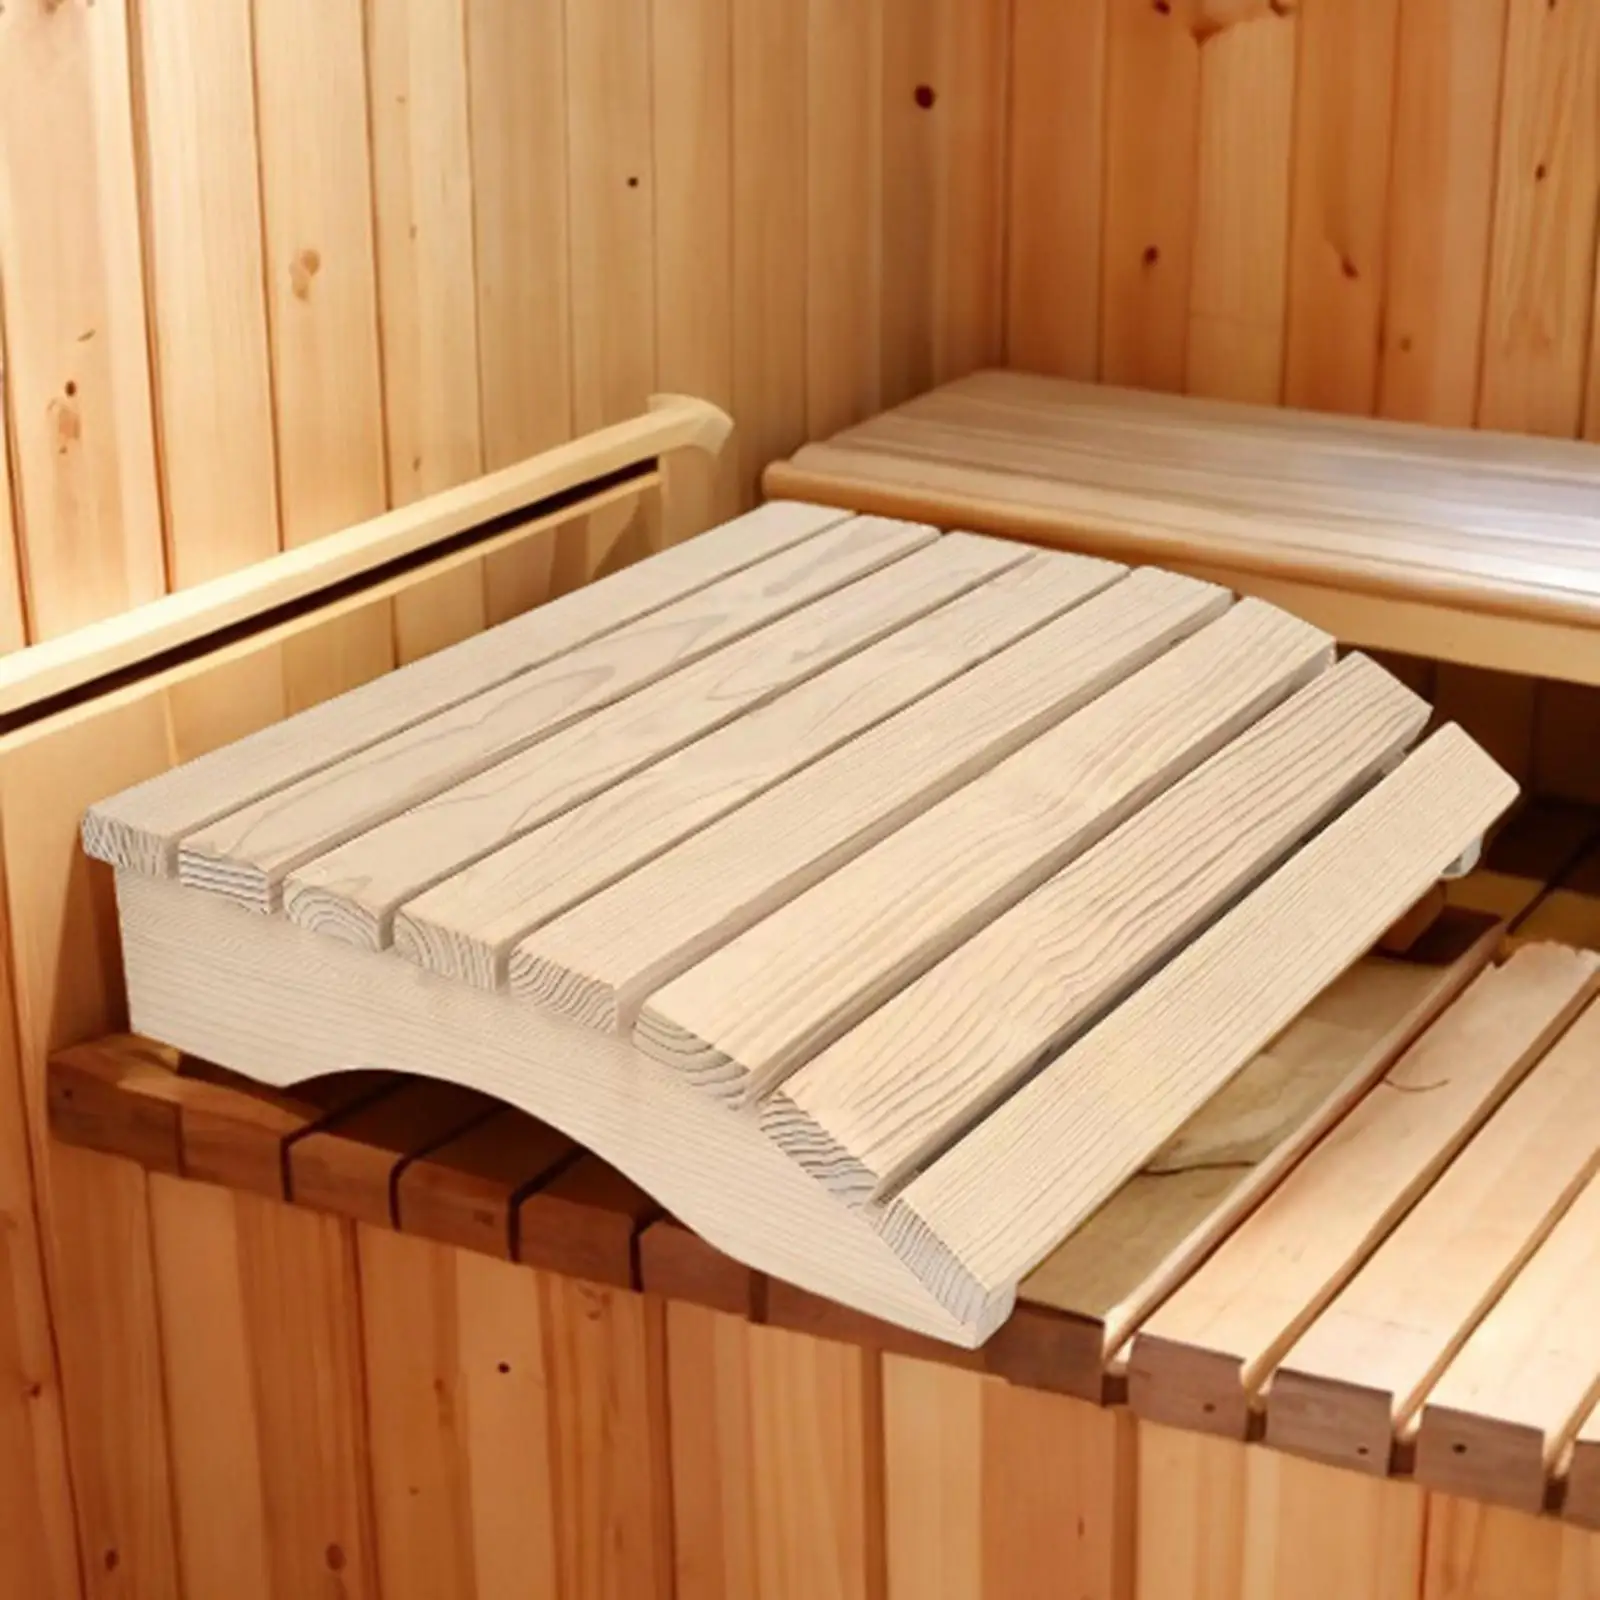 Sauna Backrest Household Ergonomic Backrest Anti Slip Wooden Sauna Headrest Sauna Supplies Accessories for Steam Room Sauna Room